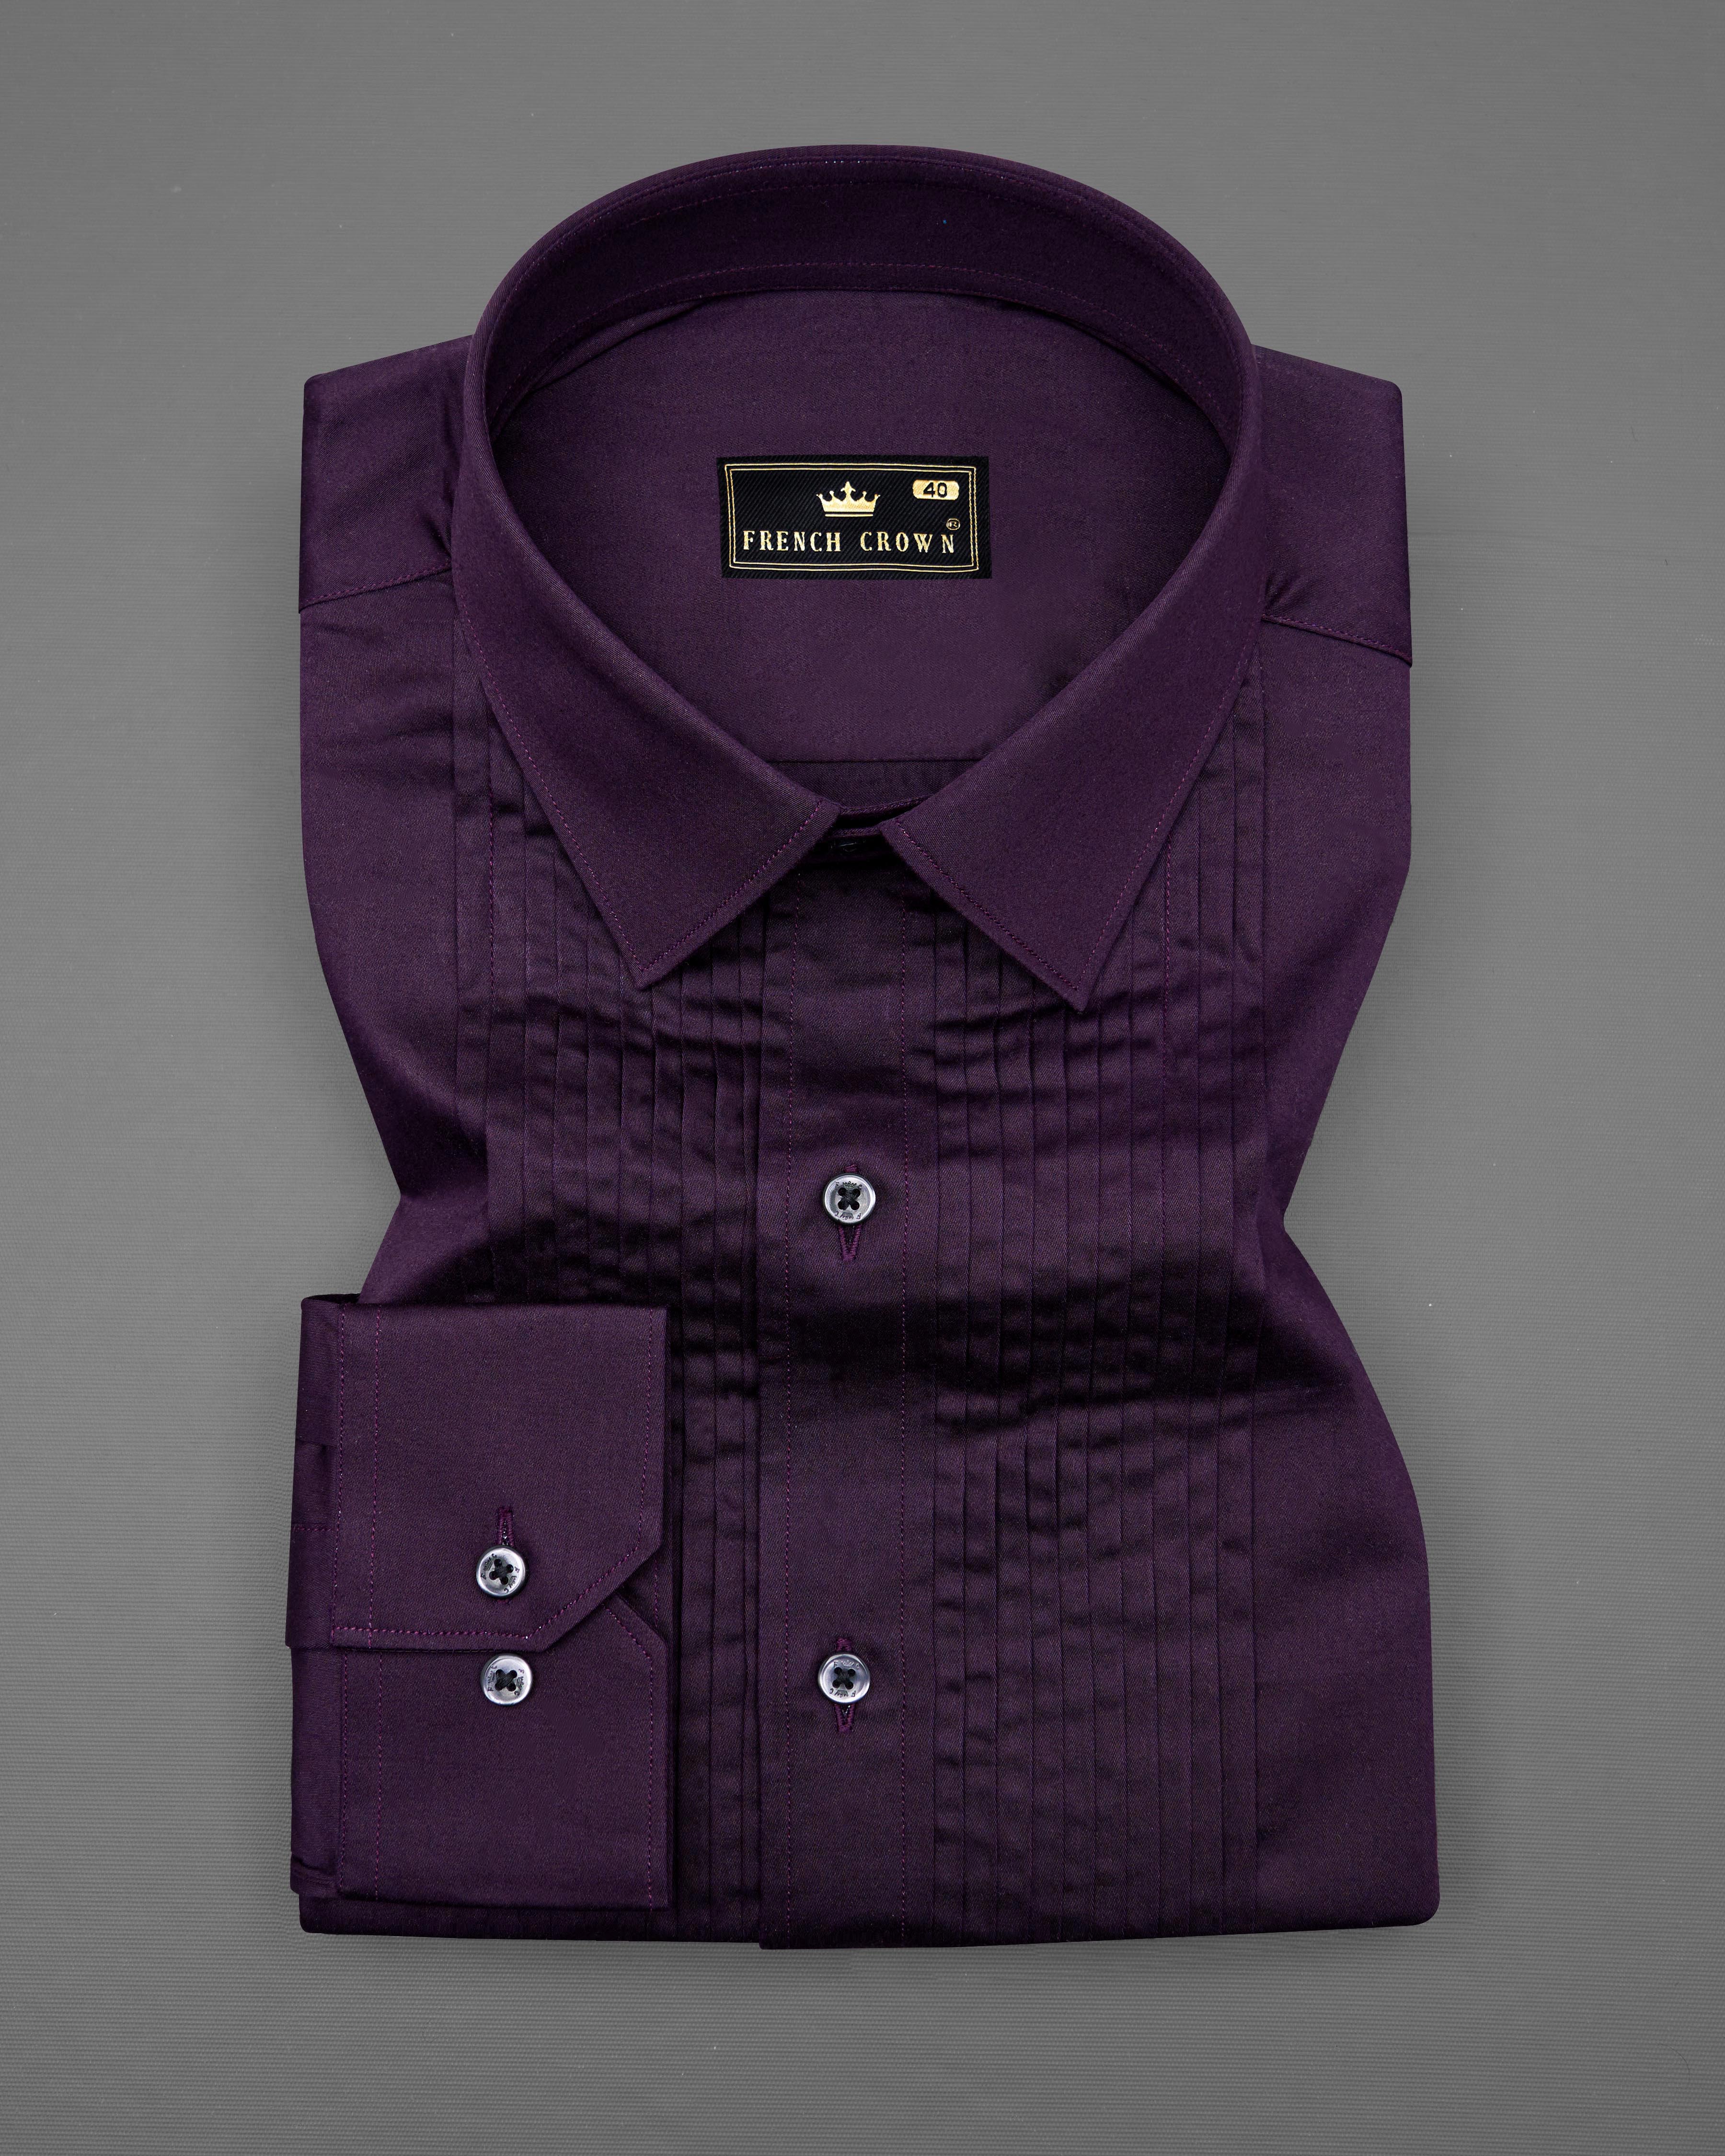 Tolopea Purple Subtle Sheen Snake Pleated Super Soft Premium Cotton Tuxedo Shirt 8690-BLK-TXD-38, 8690-BLK-TXD-H-38, 8690-BLK-TXD-39, 8690-BLK-TXD-H-39, 8690-BLK-TXD-40, 8690-BLK-TXD-H-40, 8690-BLK-TXD-42, 8690-BLK-TXD-H-42, 8690-BLK-TXD-44, 8690-BLK-TXD-H-44, 8690-BLK-TXD-46, 8690-BLK-TXD-H-46, 8690-BLK-TXD-48, 8690-BLK-TXD-H-48, 8690-BLK-TXD-50, 8690-BLK-TXD-H-50, 8690-BLK-TXD-52, 8690-BLK-TXD-H-52